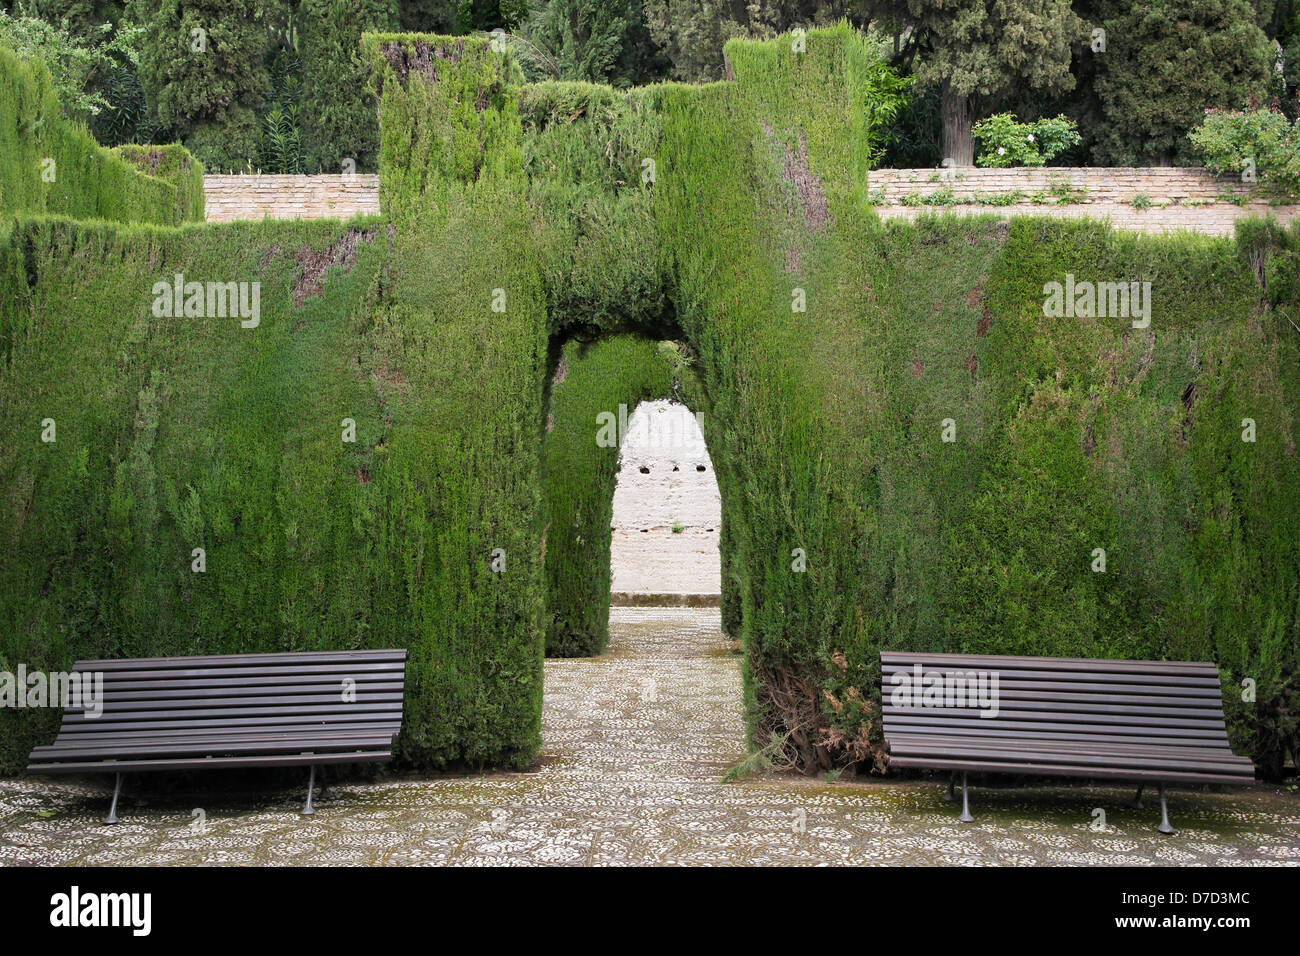 Los setos recortados ans arcos en los jardines del Generalife, La Alhambra, Granada Foto de stock